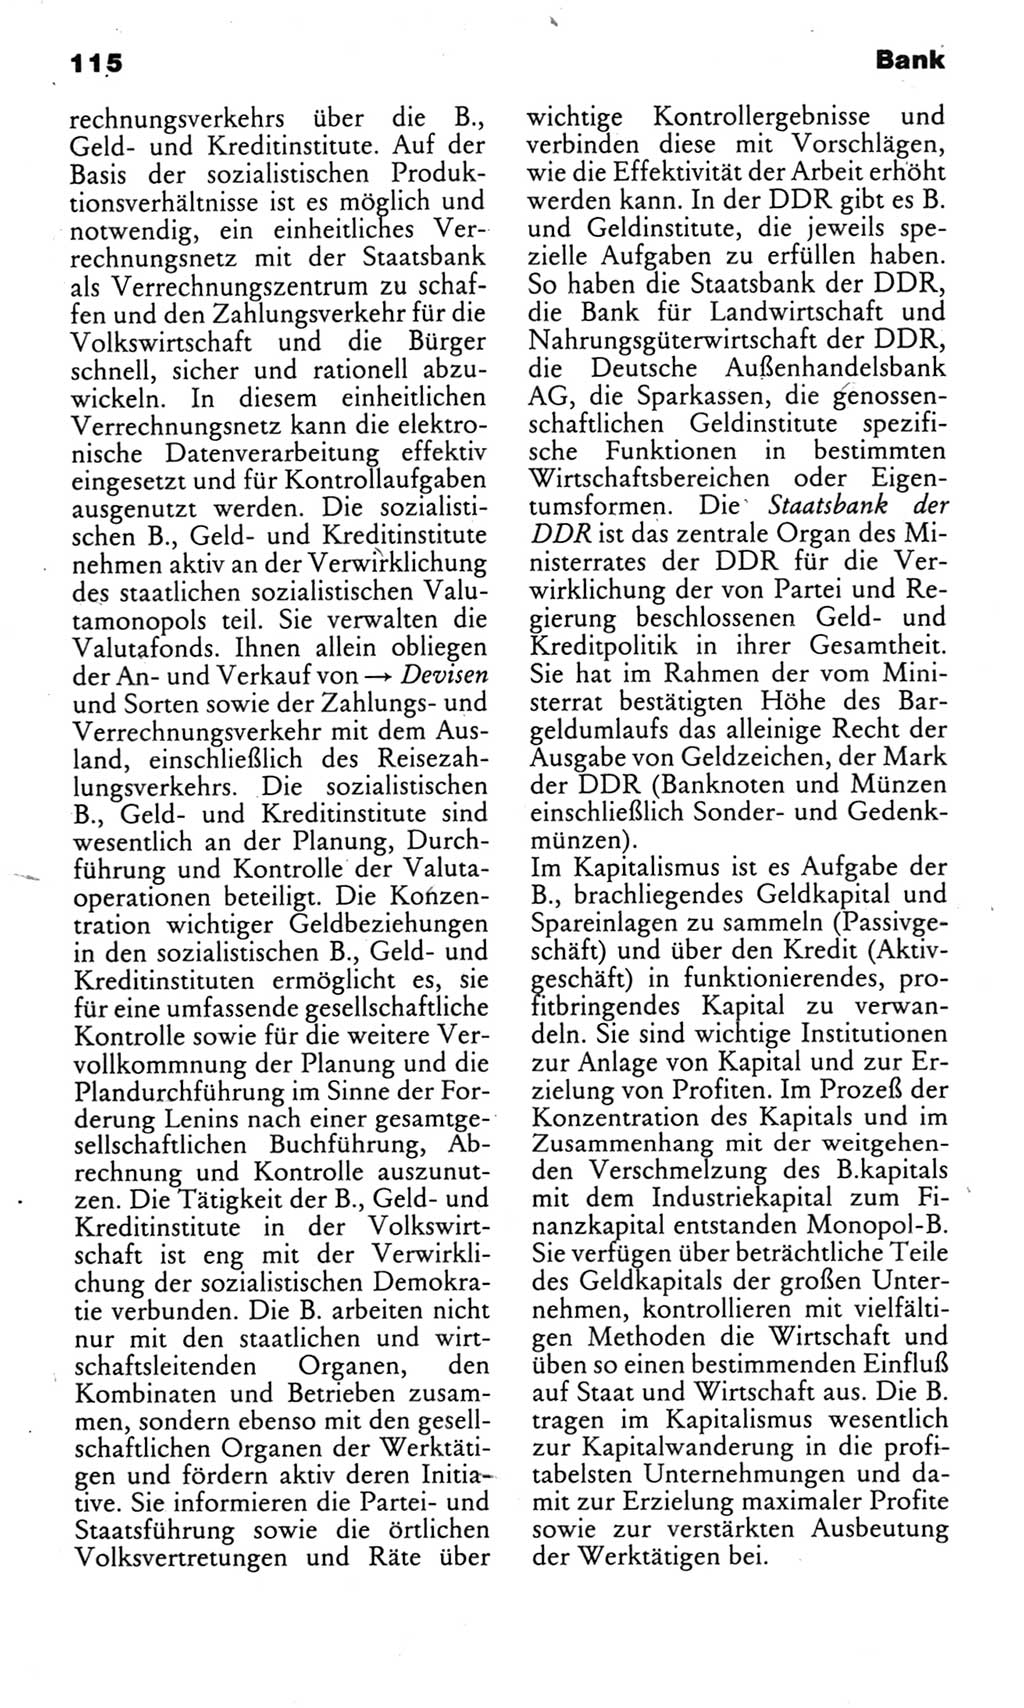 Kleines politisches Wörterbuch [Deutsche Demokratische Republik (DDR)] 1985, Seite 115 (Kl. pol. Wb. DDR 1985, S. 115)